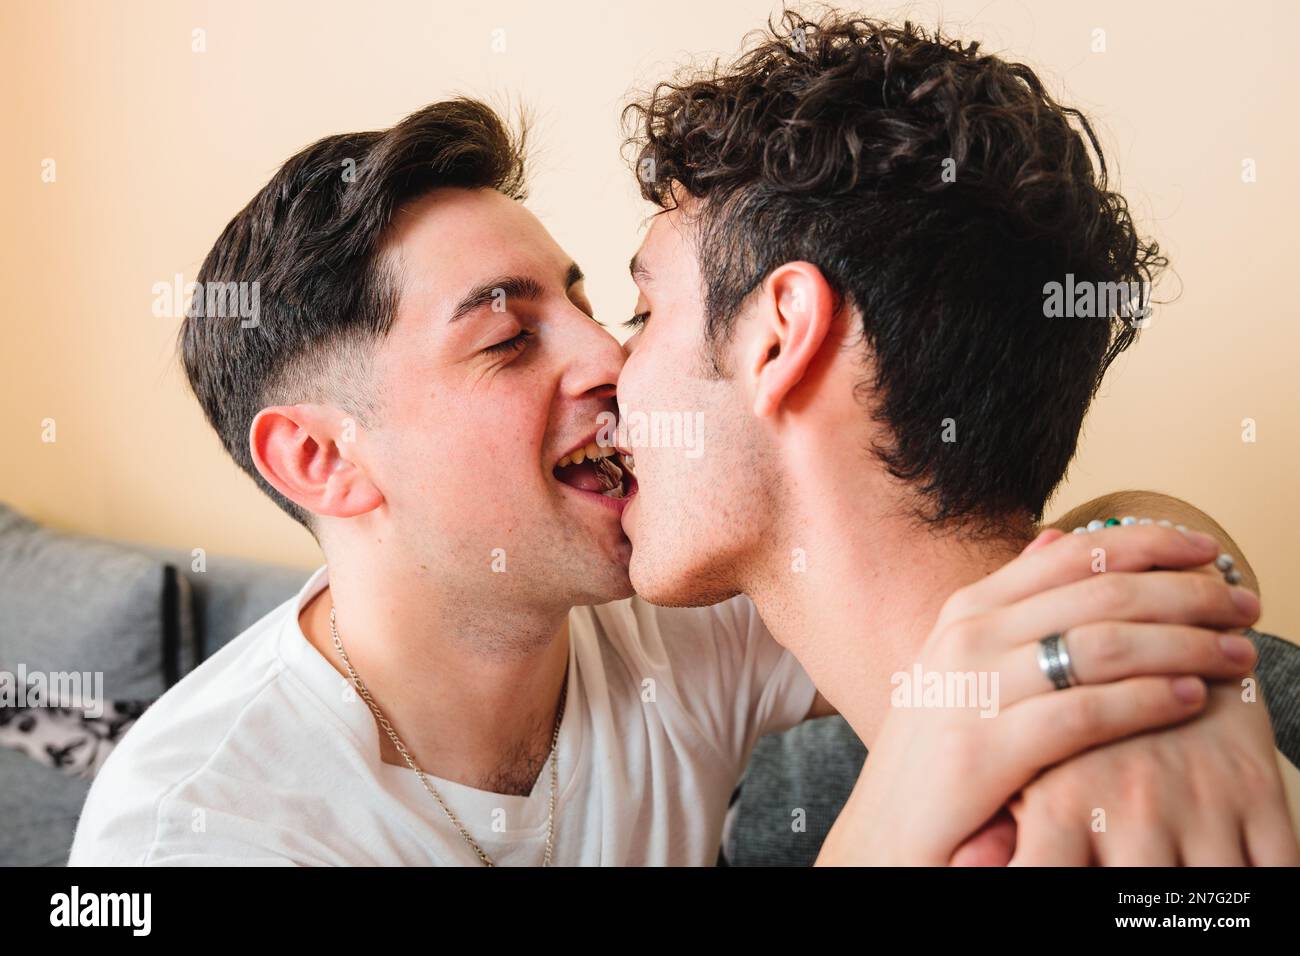 Gros plan d'un couple gay romantiquement embrassant sur la bouche, jouant et souriant. Relation LGBT Banque D'Images